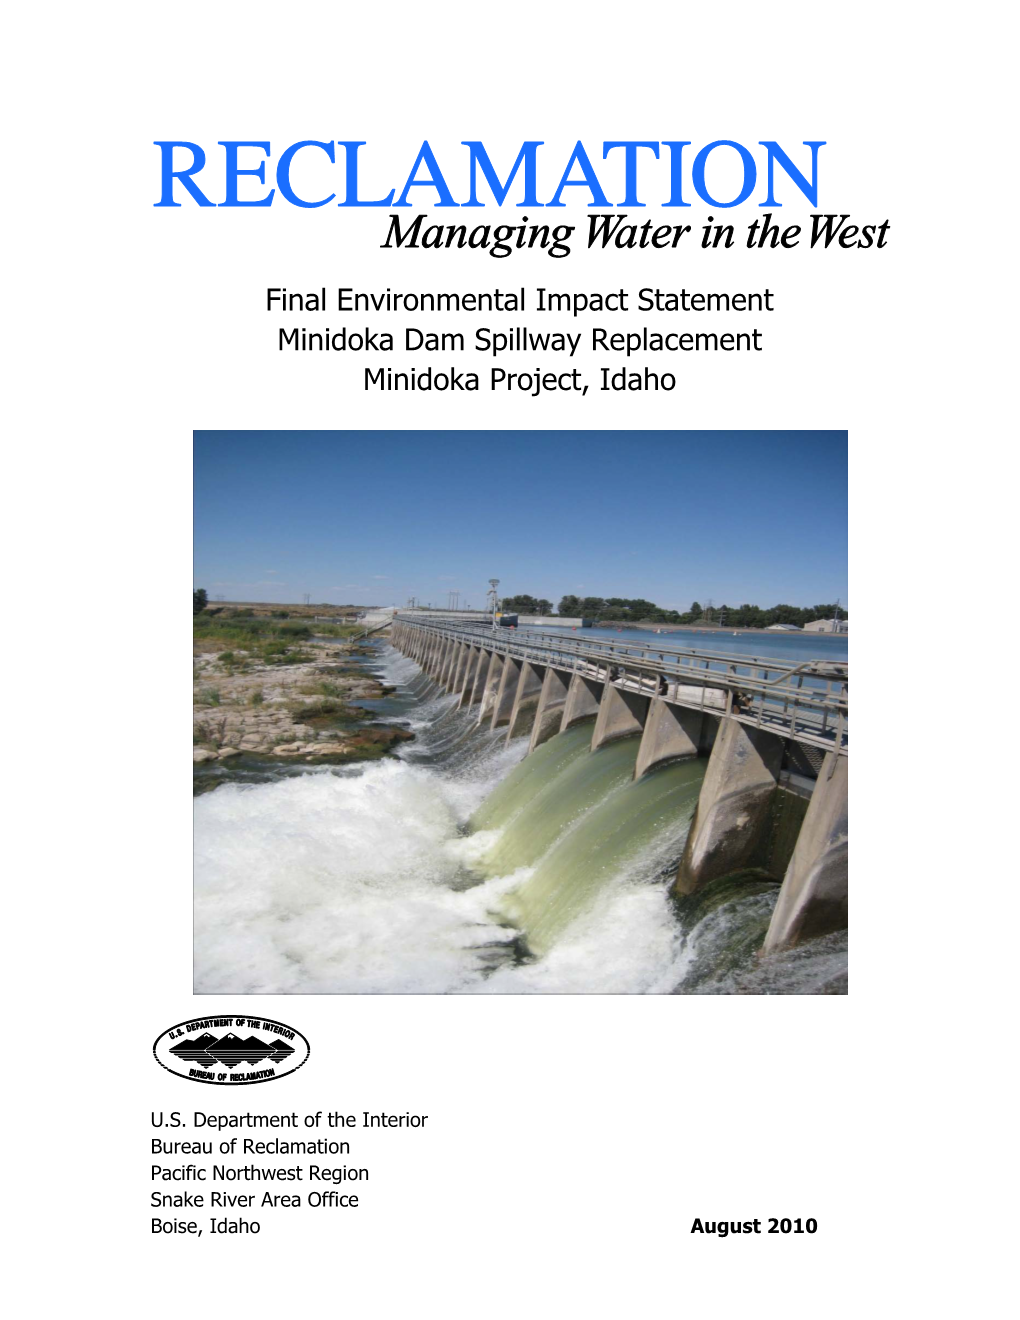 Final Environmental Impact Statement Minidoka Dam Spillway Replacement Minidoka Project, Idaho